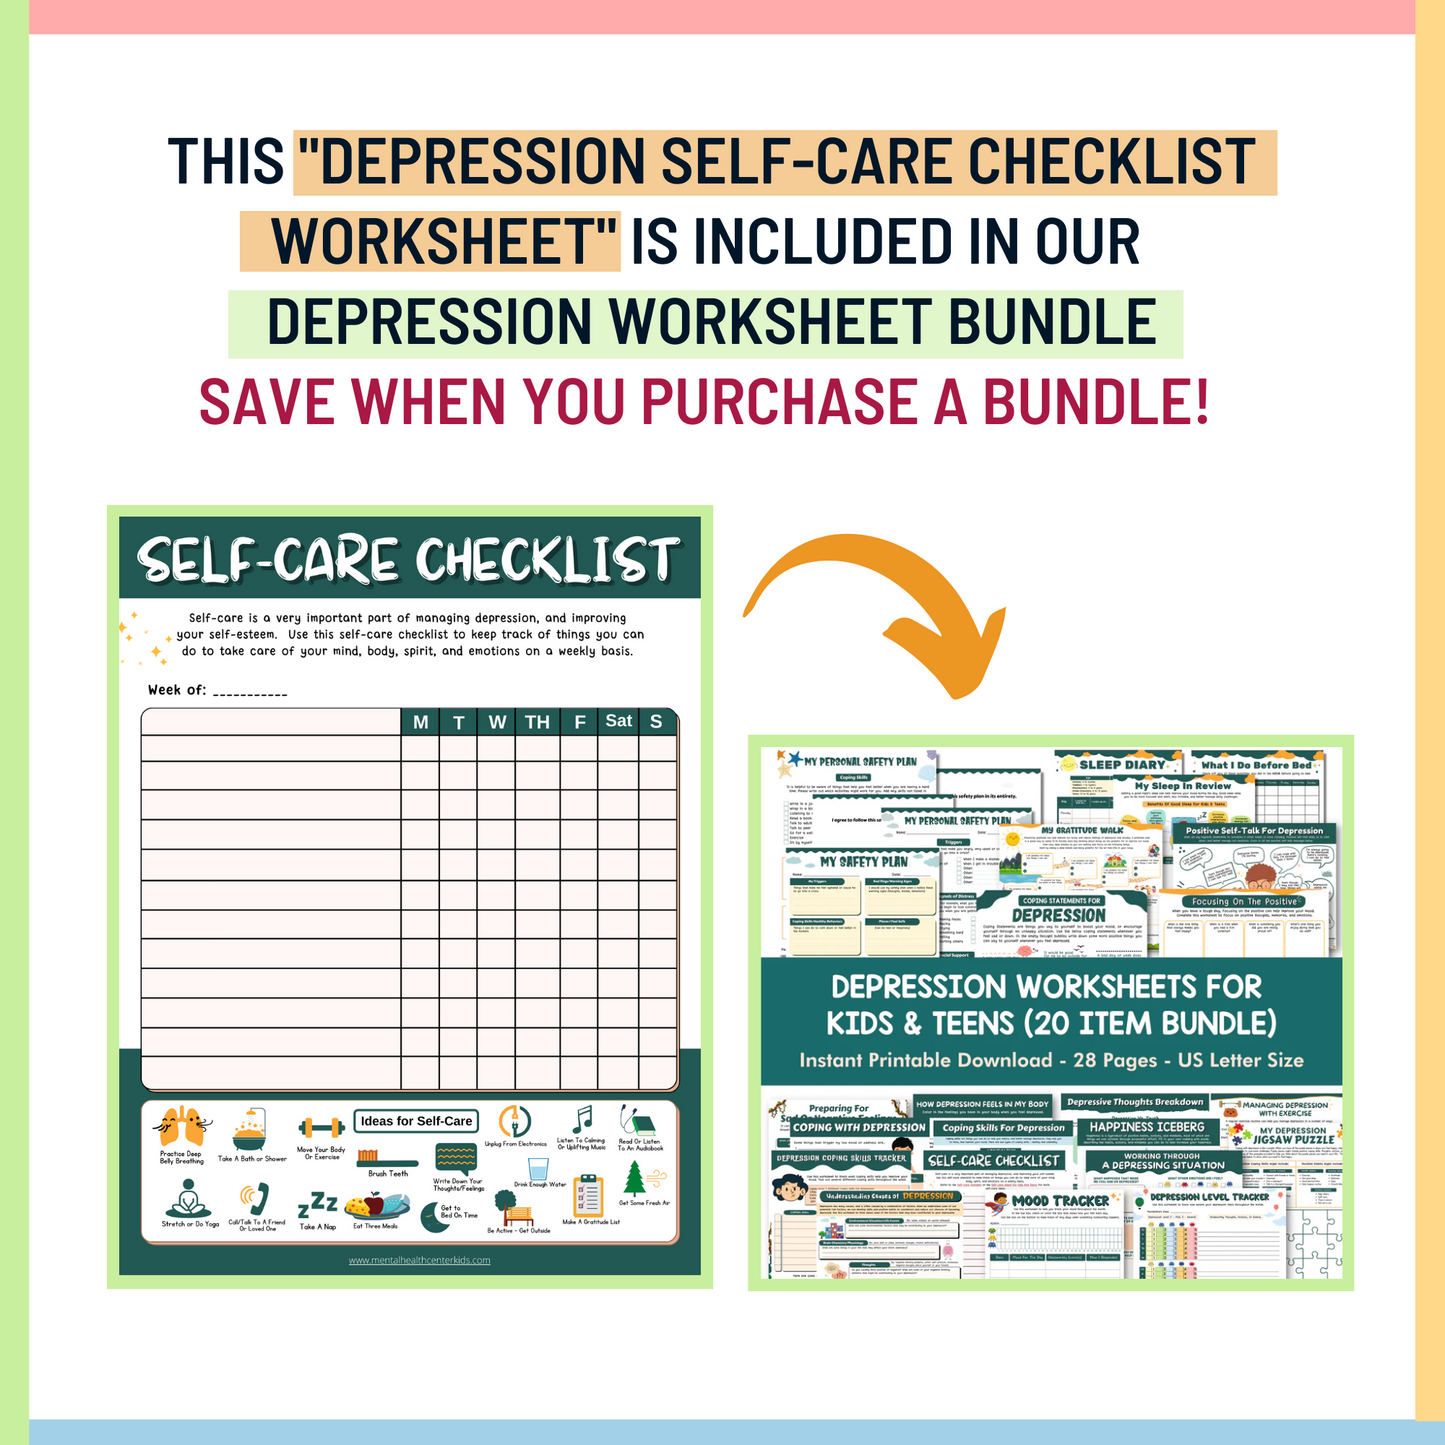 Depression Self-Care Checklist